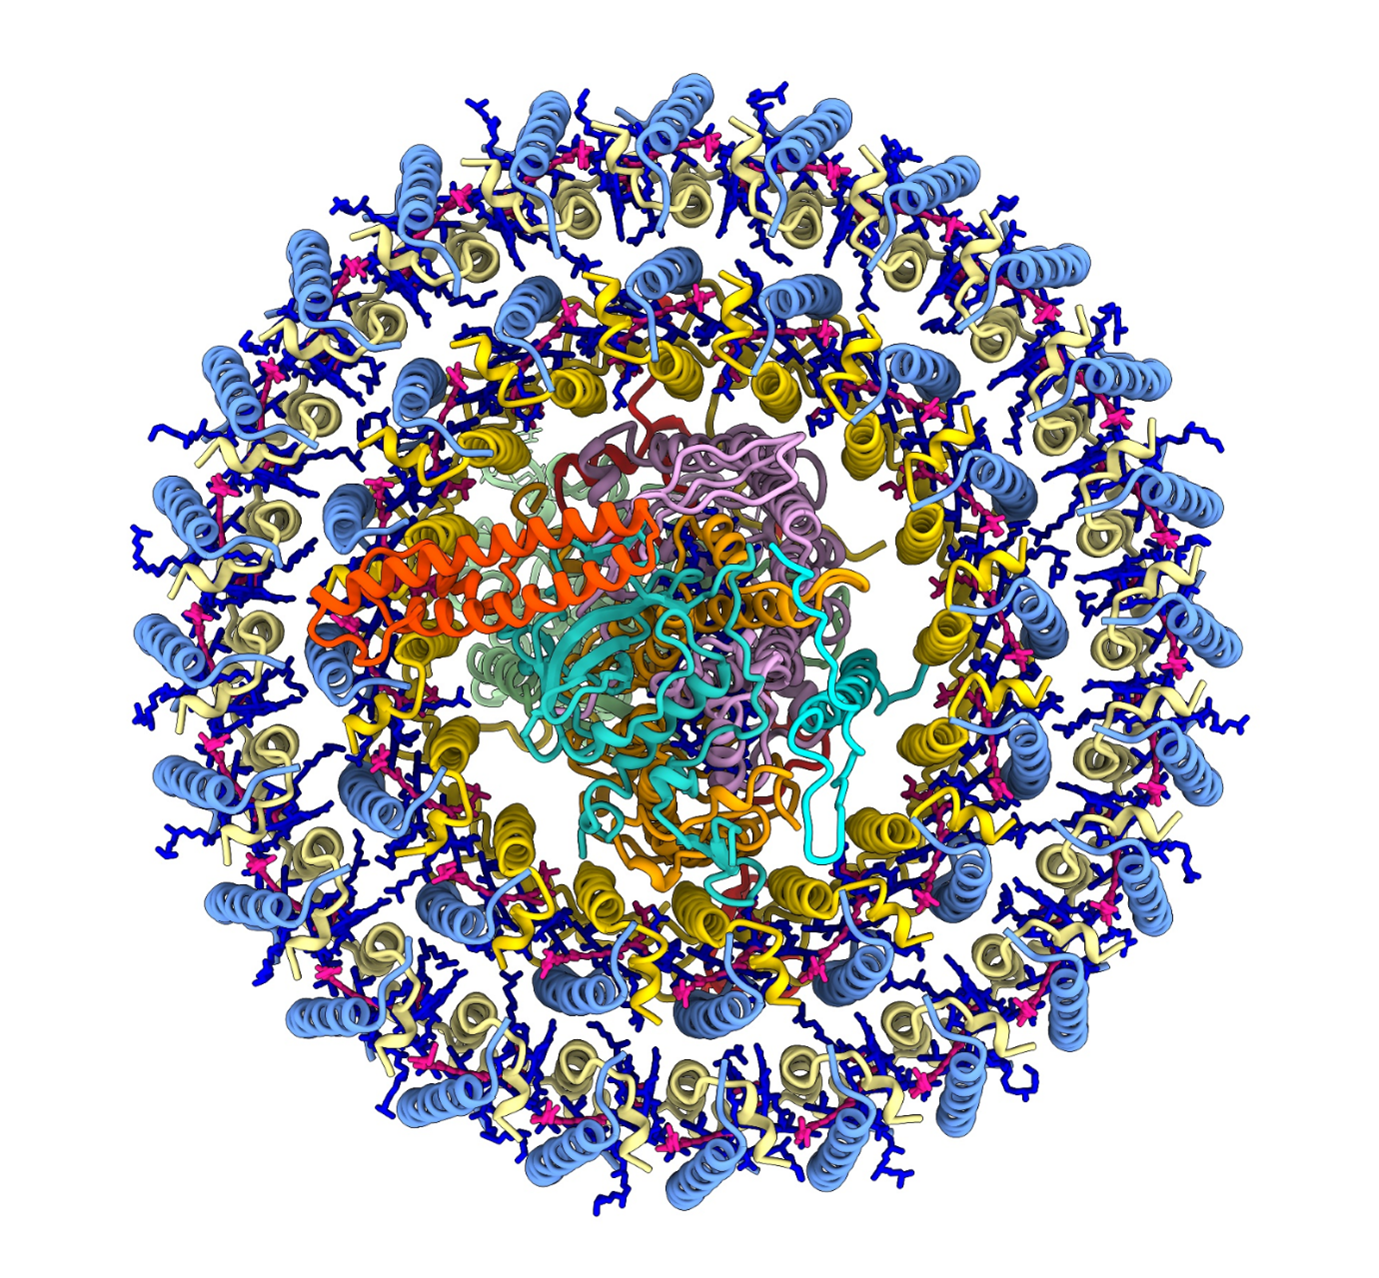 Schema di due anelli di molecole multicolori che circondano un cerchio centrale.